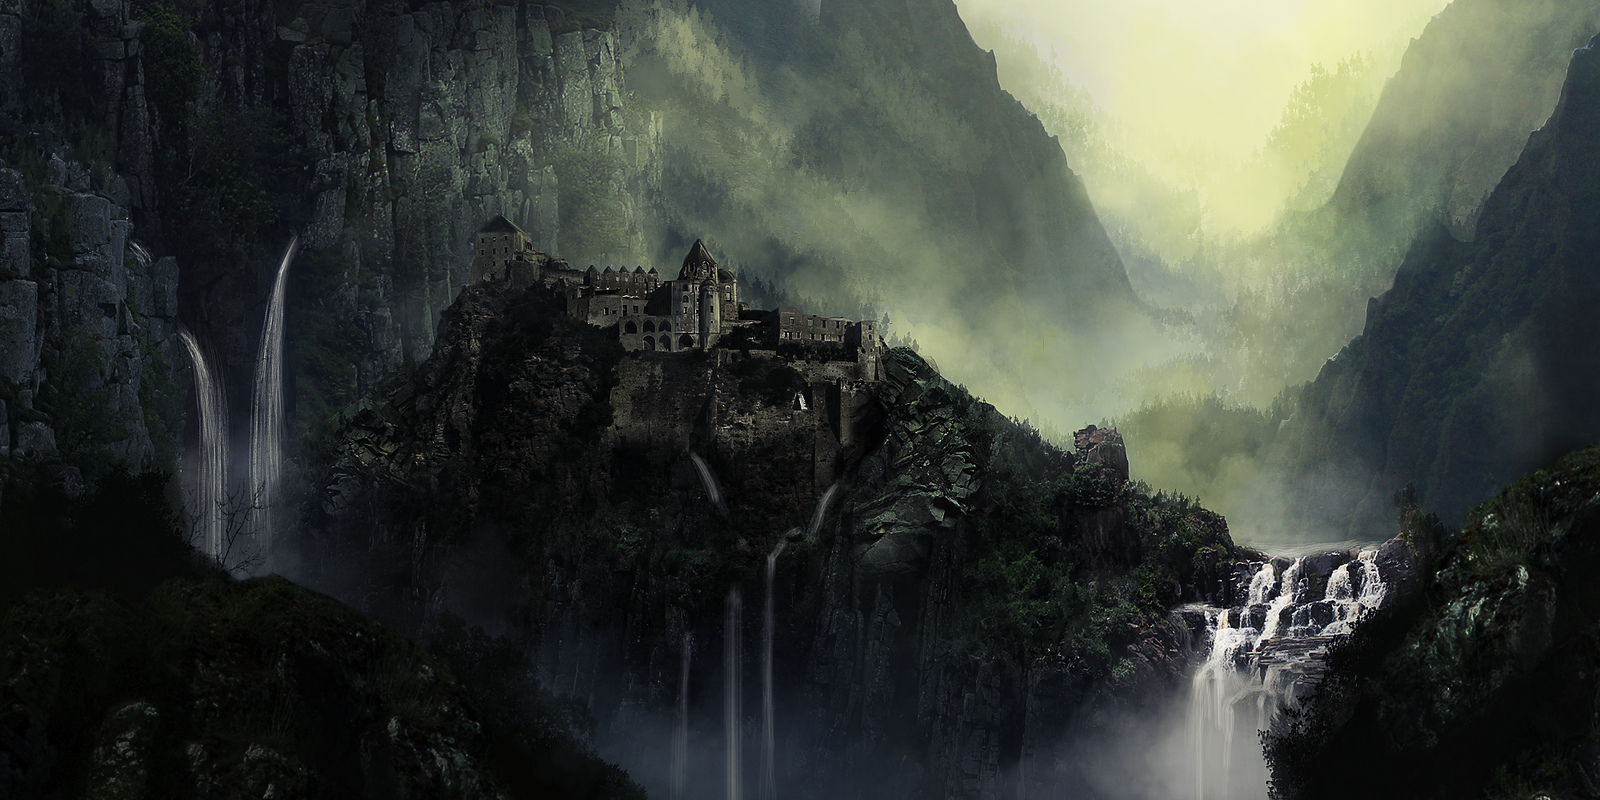 Free download wallpaper Landscape, Fantasy on your PC desktop